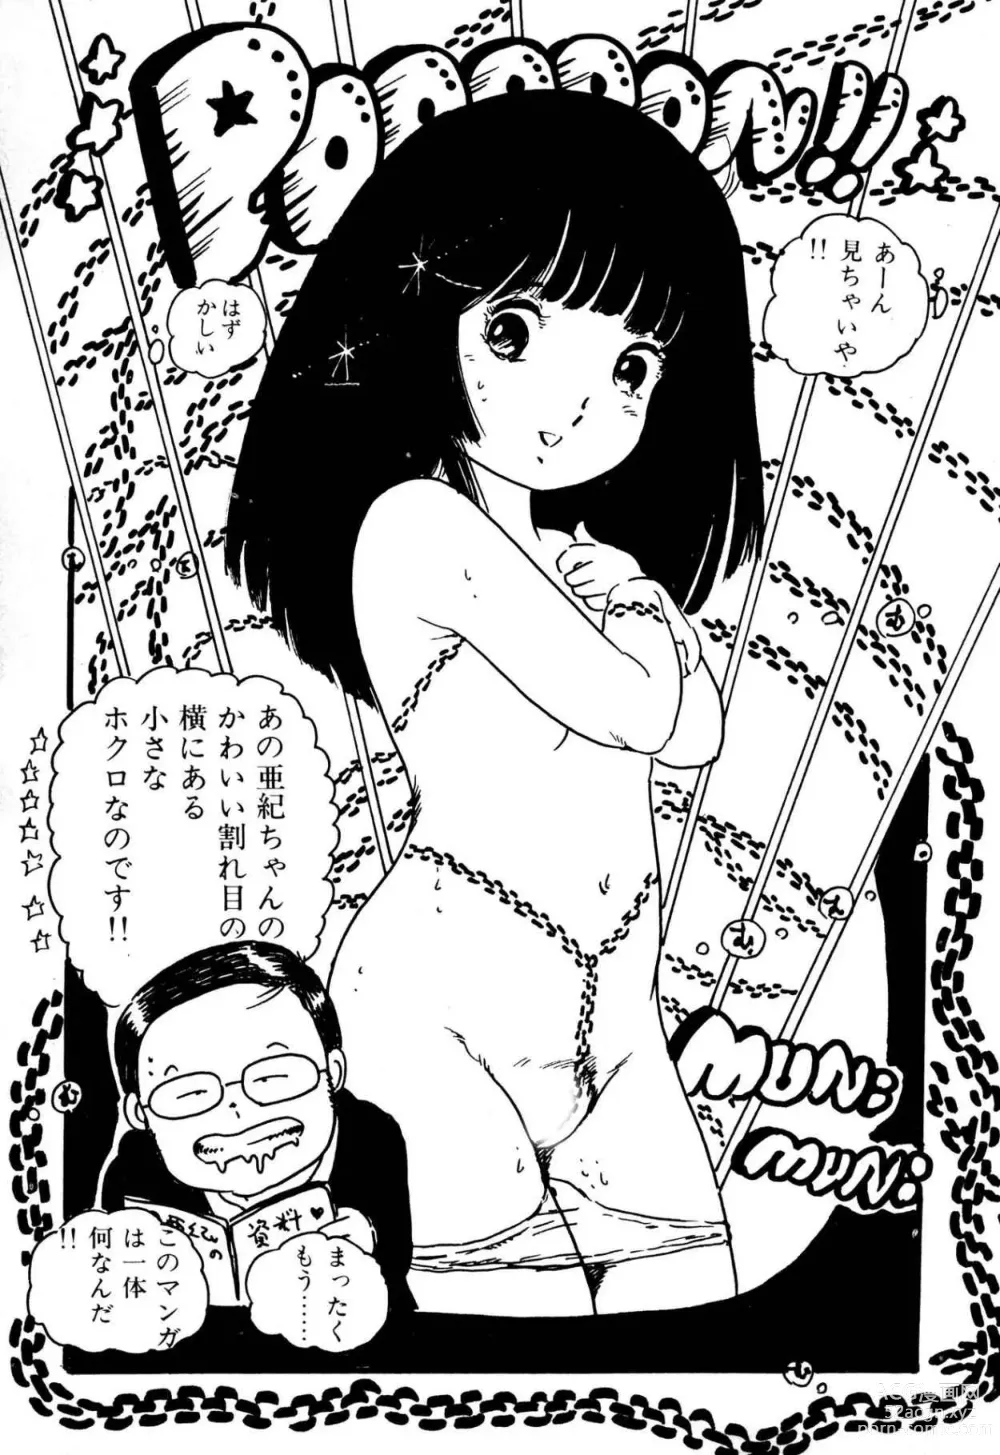 Page 193 of manga Koisuru Yousei